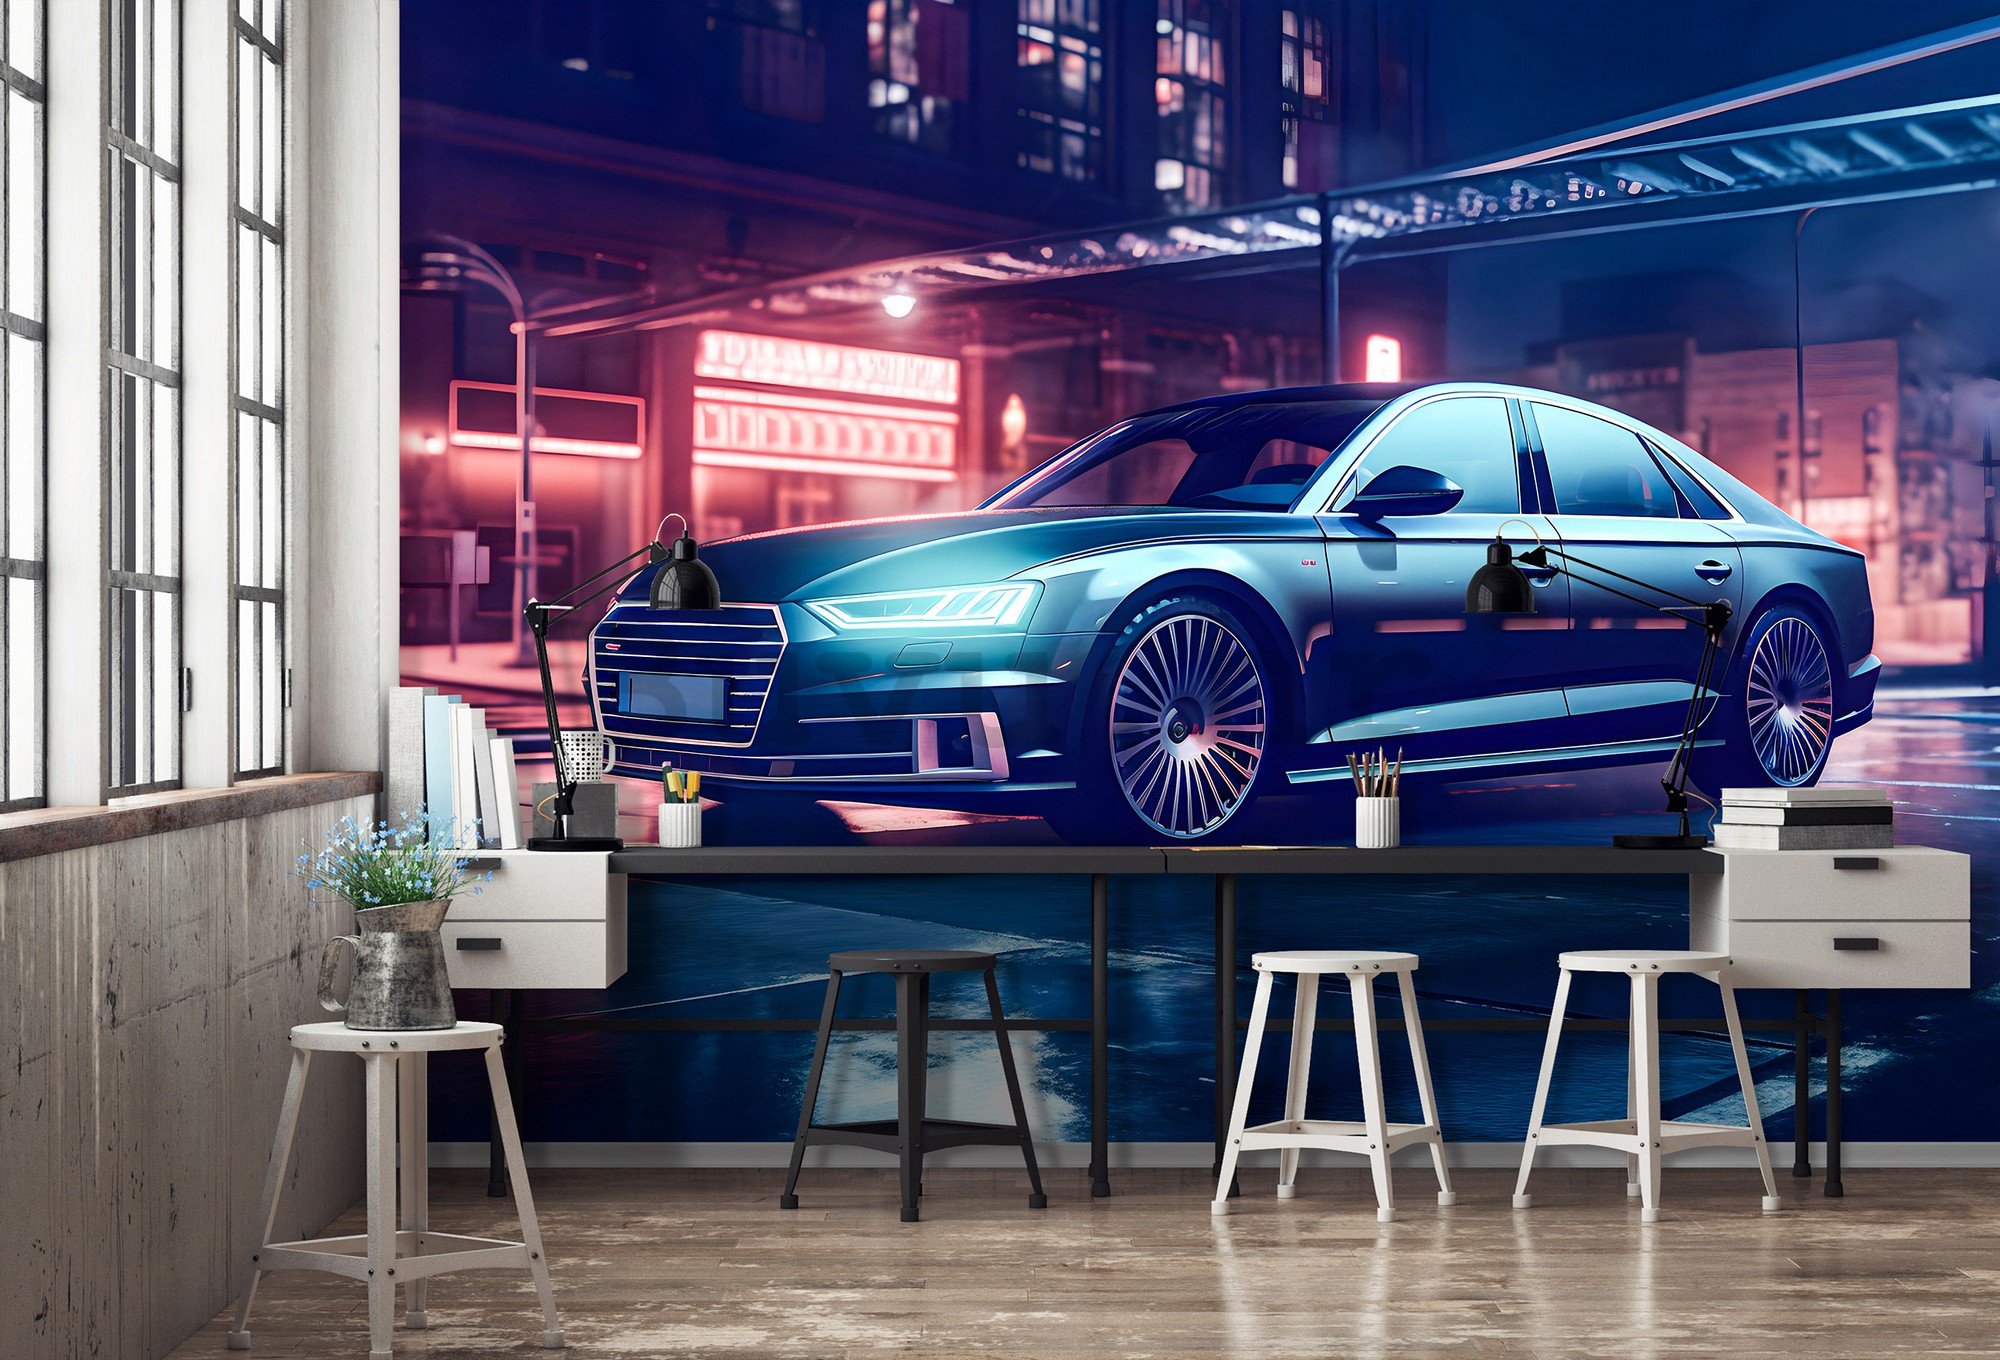 Vlies foto tapeta: Car Audi city neon - 416x254 cm